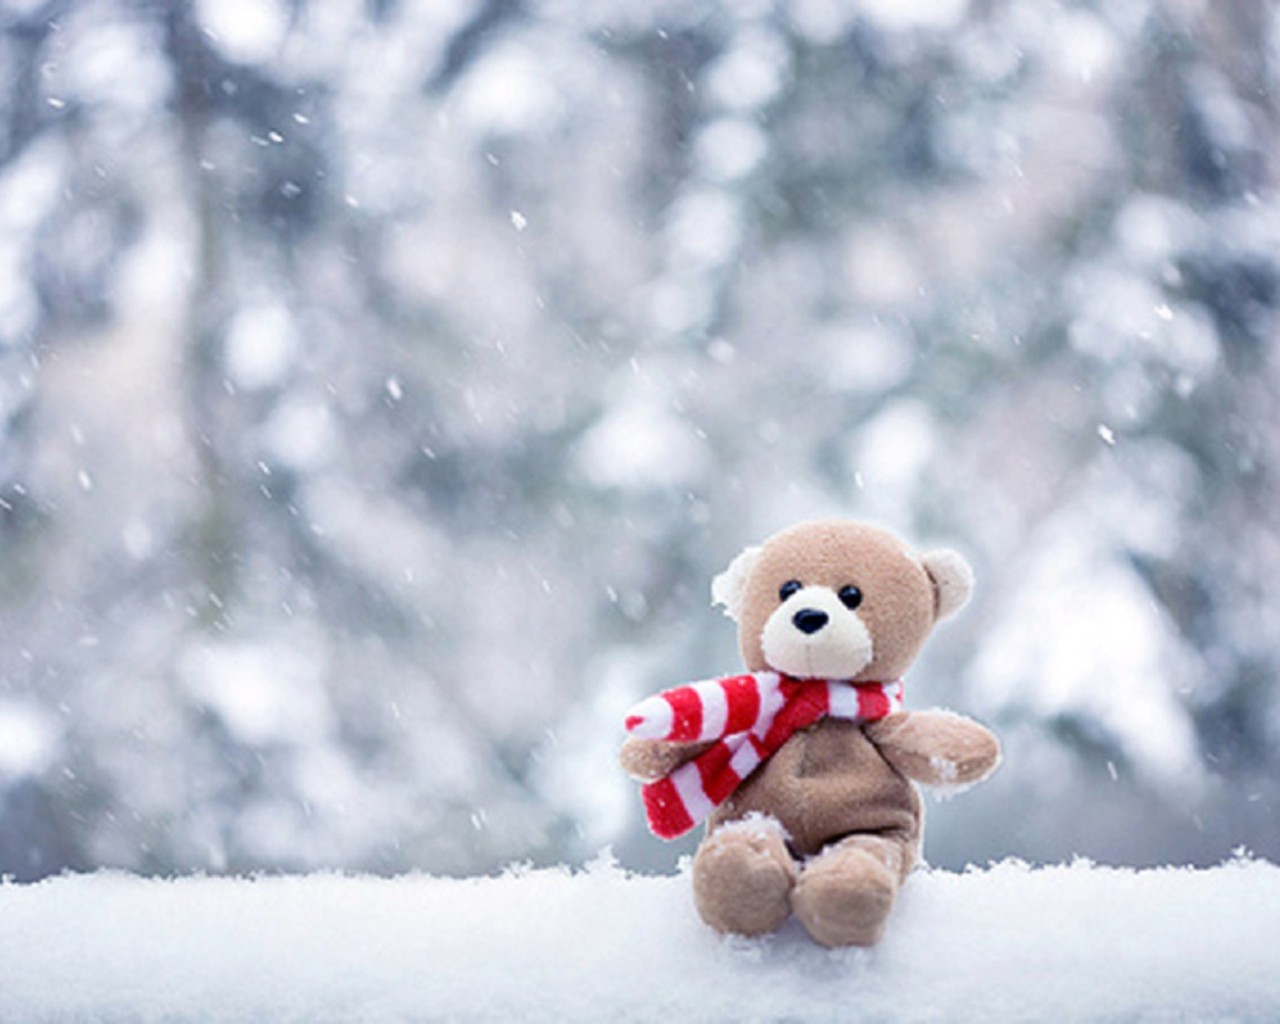 sad teddy bear in snow